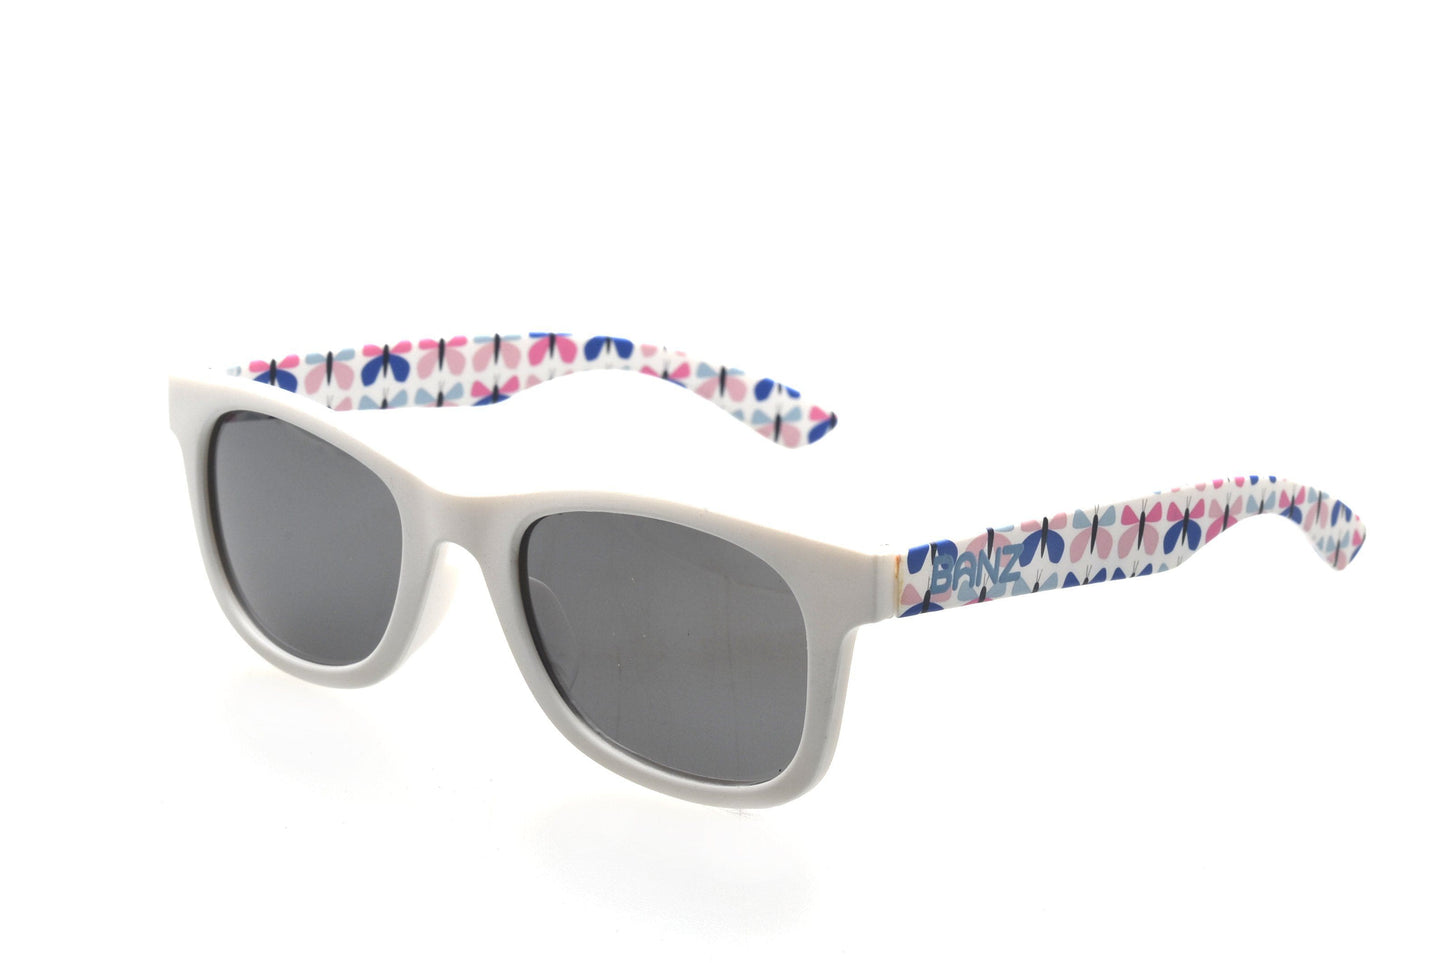 BANZ Sunglasses NEW! Kids Beachcomber Sunglasses Mod Butterfly